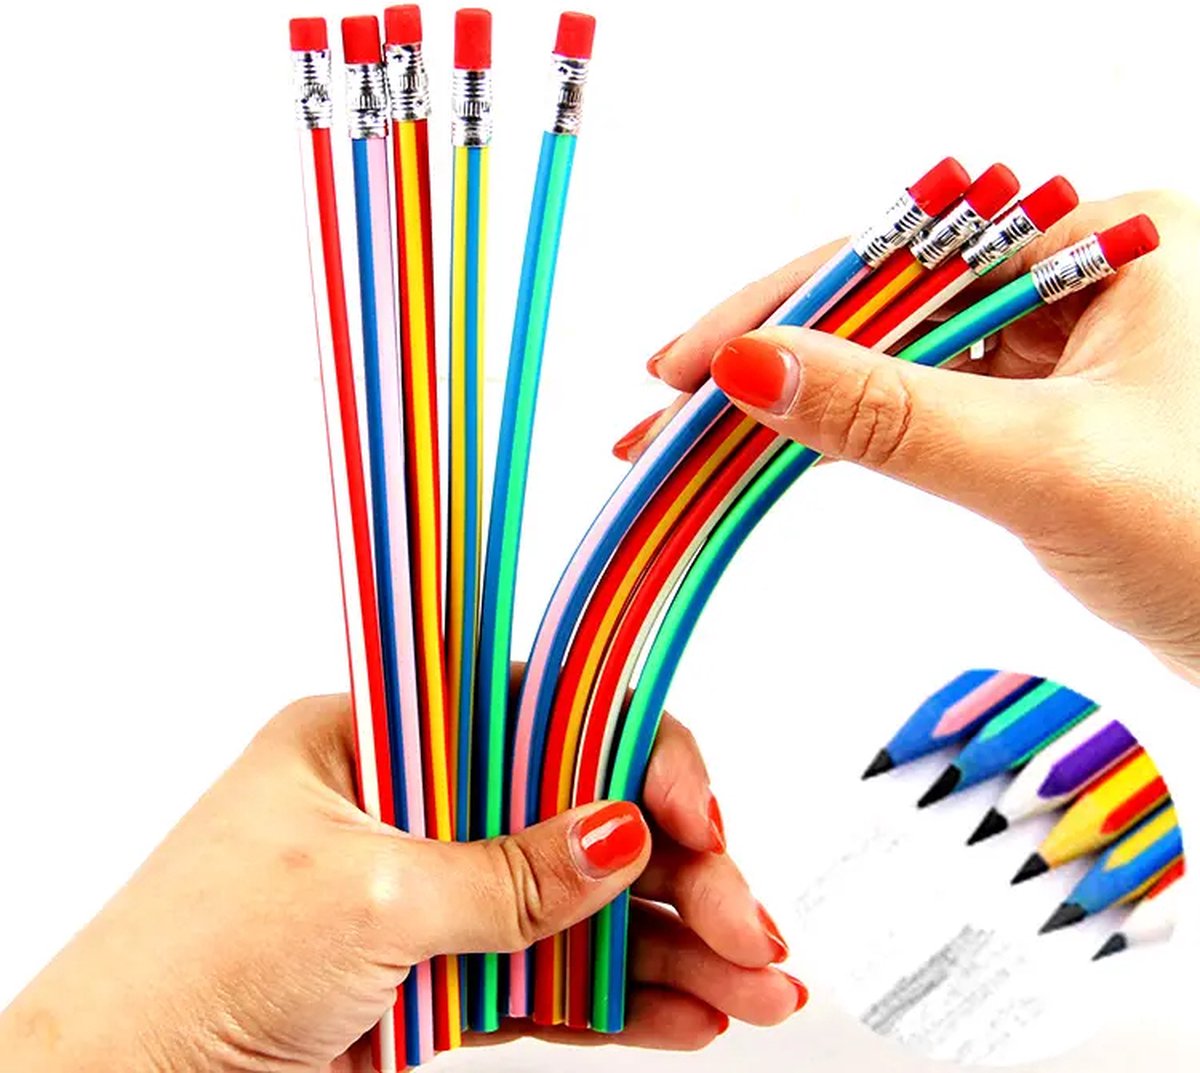 LUX- 10 potloden- Flexibele potloden-Buig potloden-uitdeel speelgoed- potloden met gum kinderen- 10STUKS flexibel potloden